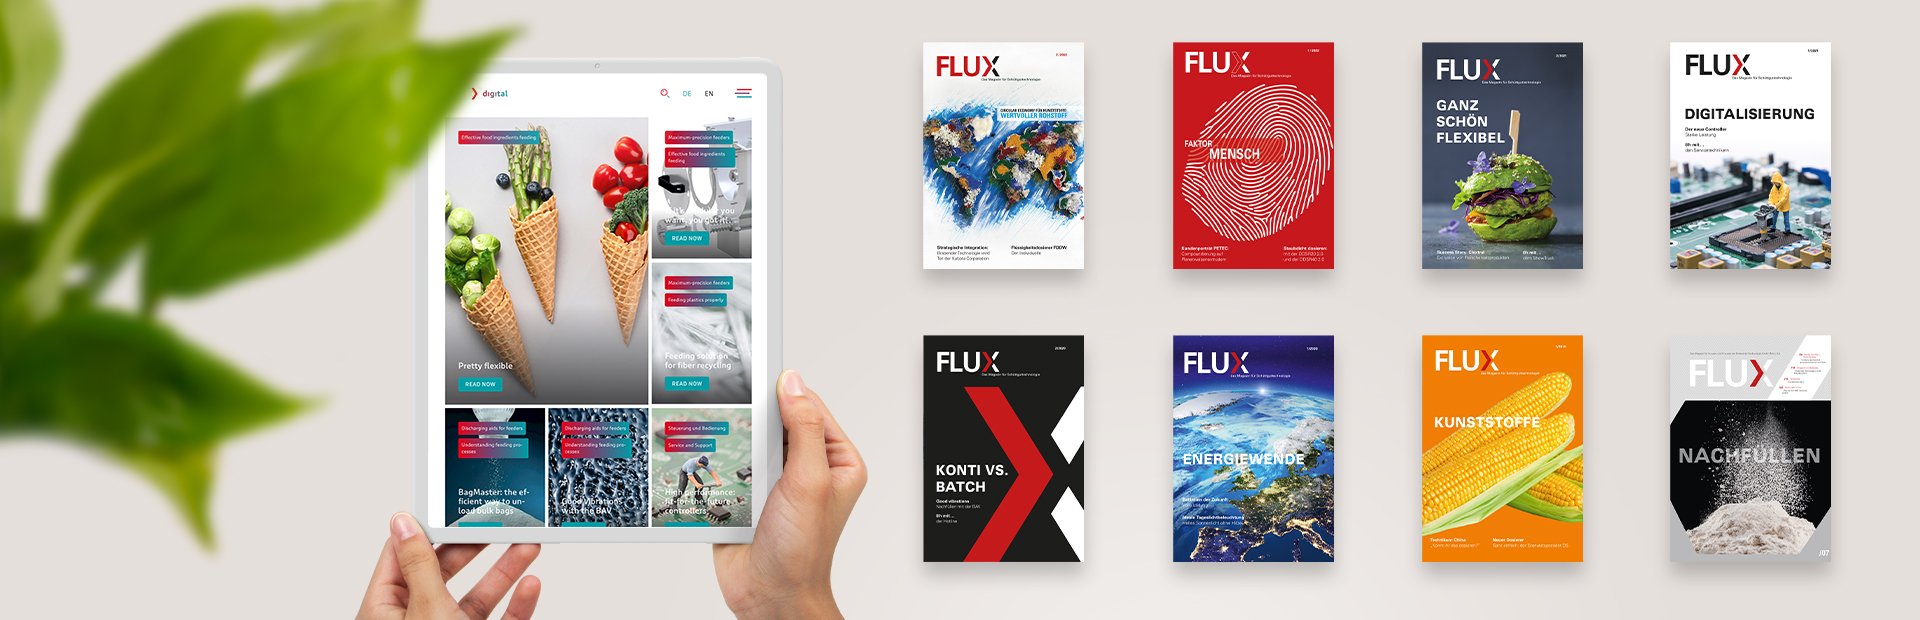 FLUX Digital – unser neues Online-Magazin